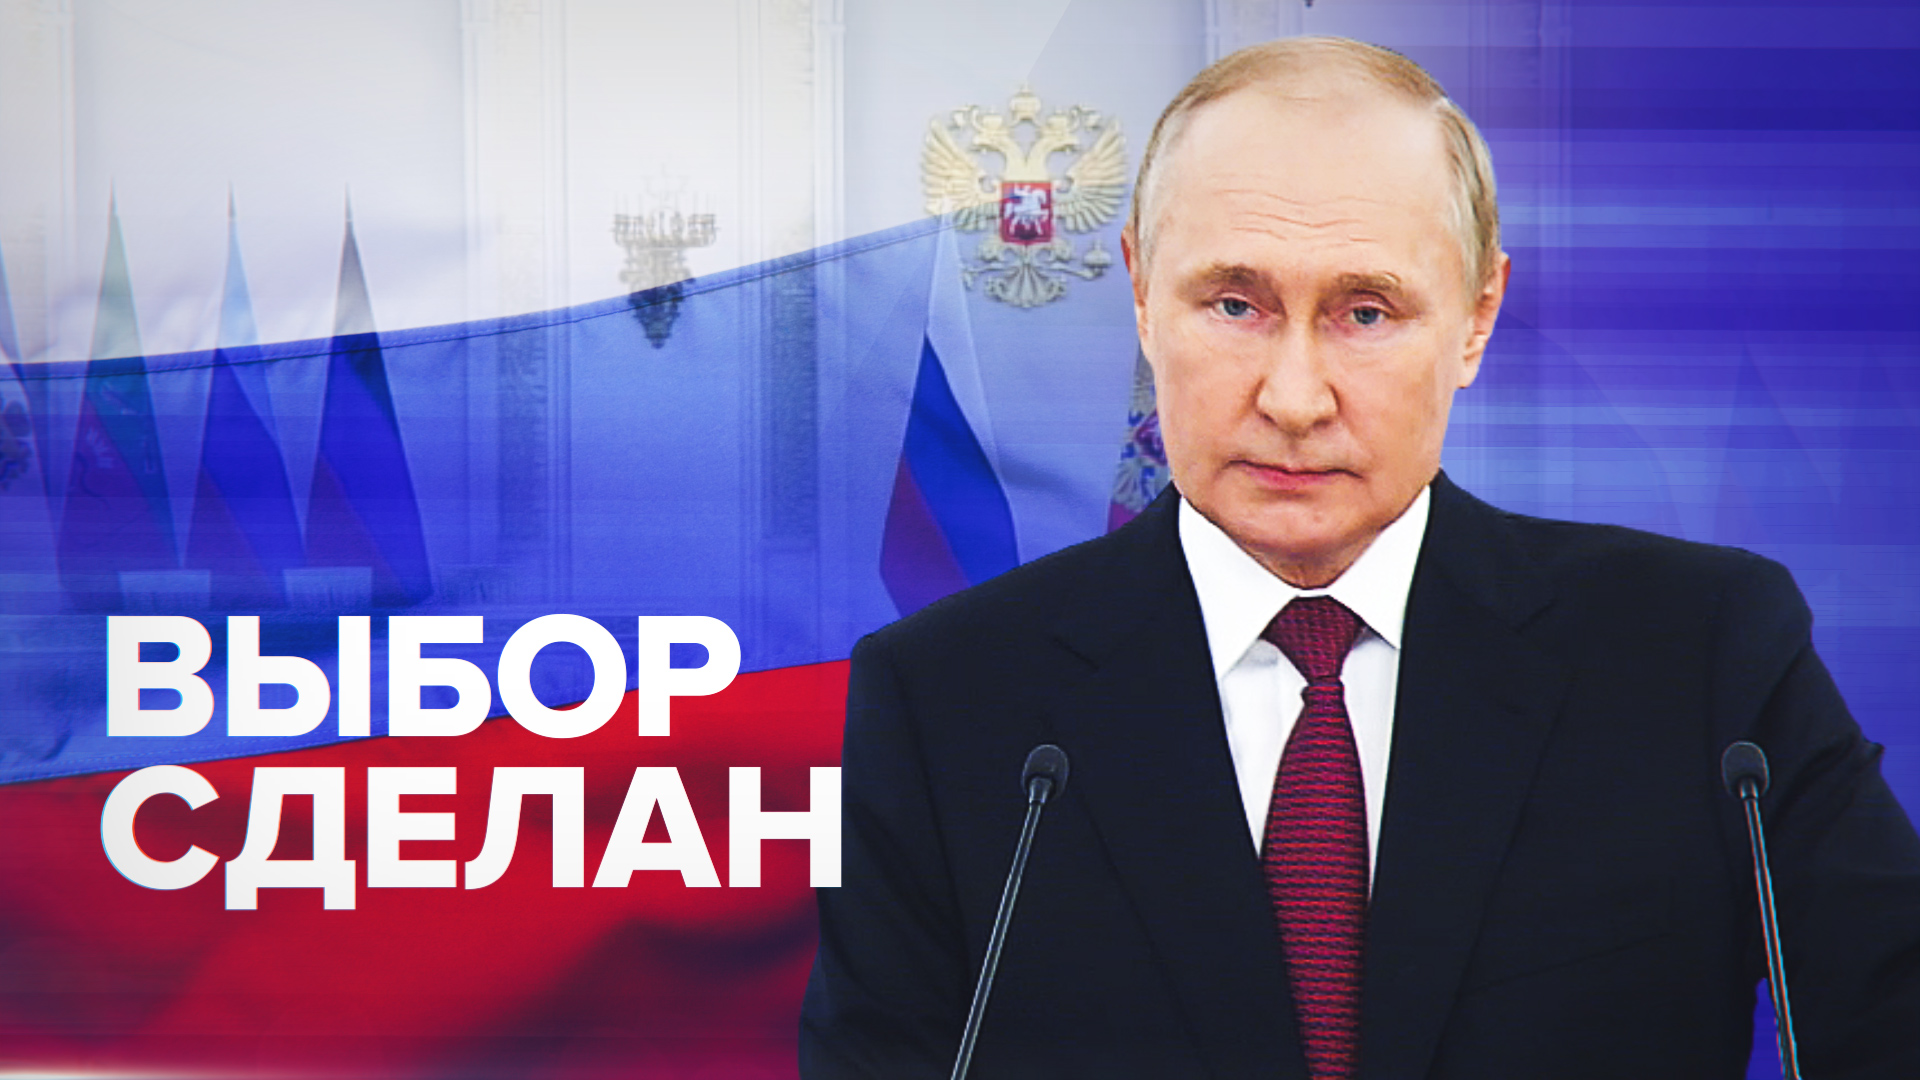 Путин готов к переговорам с Зеленским, но результаты референдумов обсуждать не будет